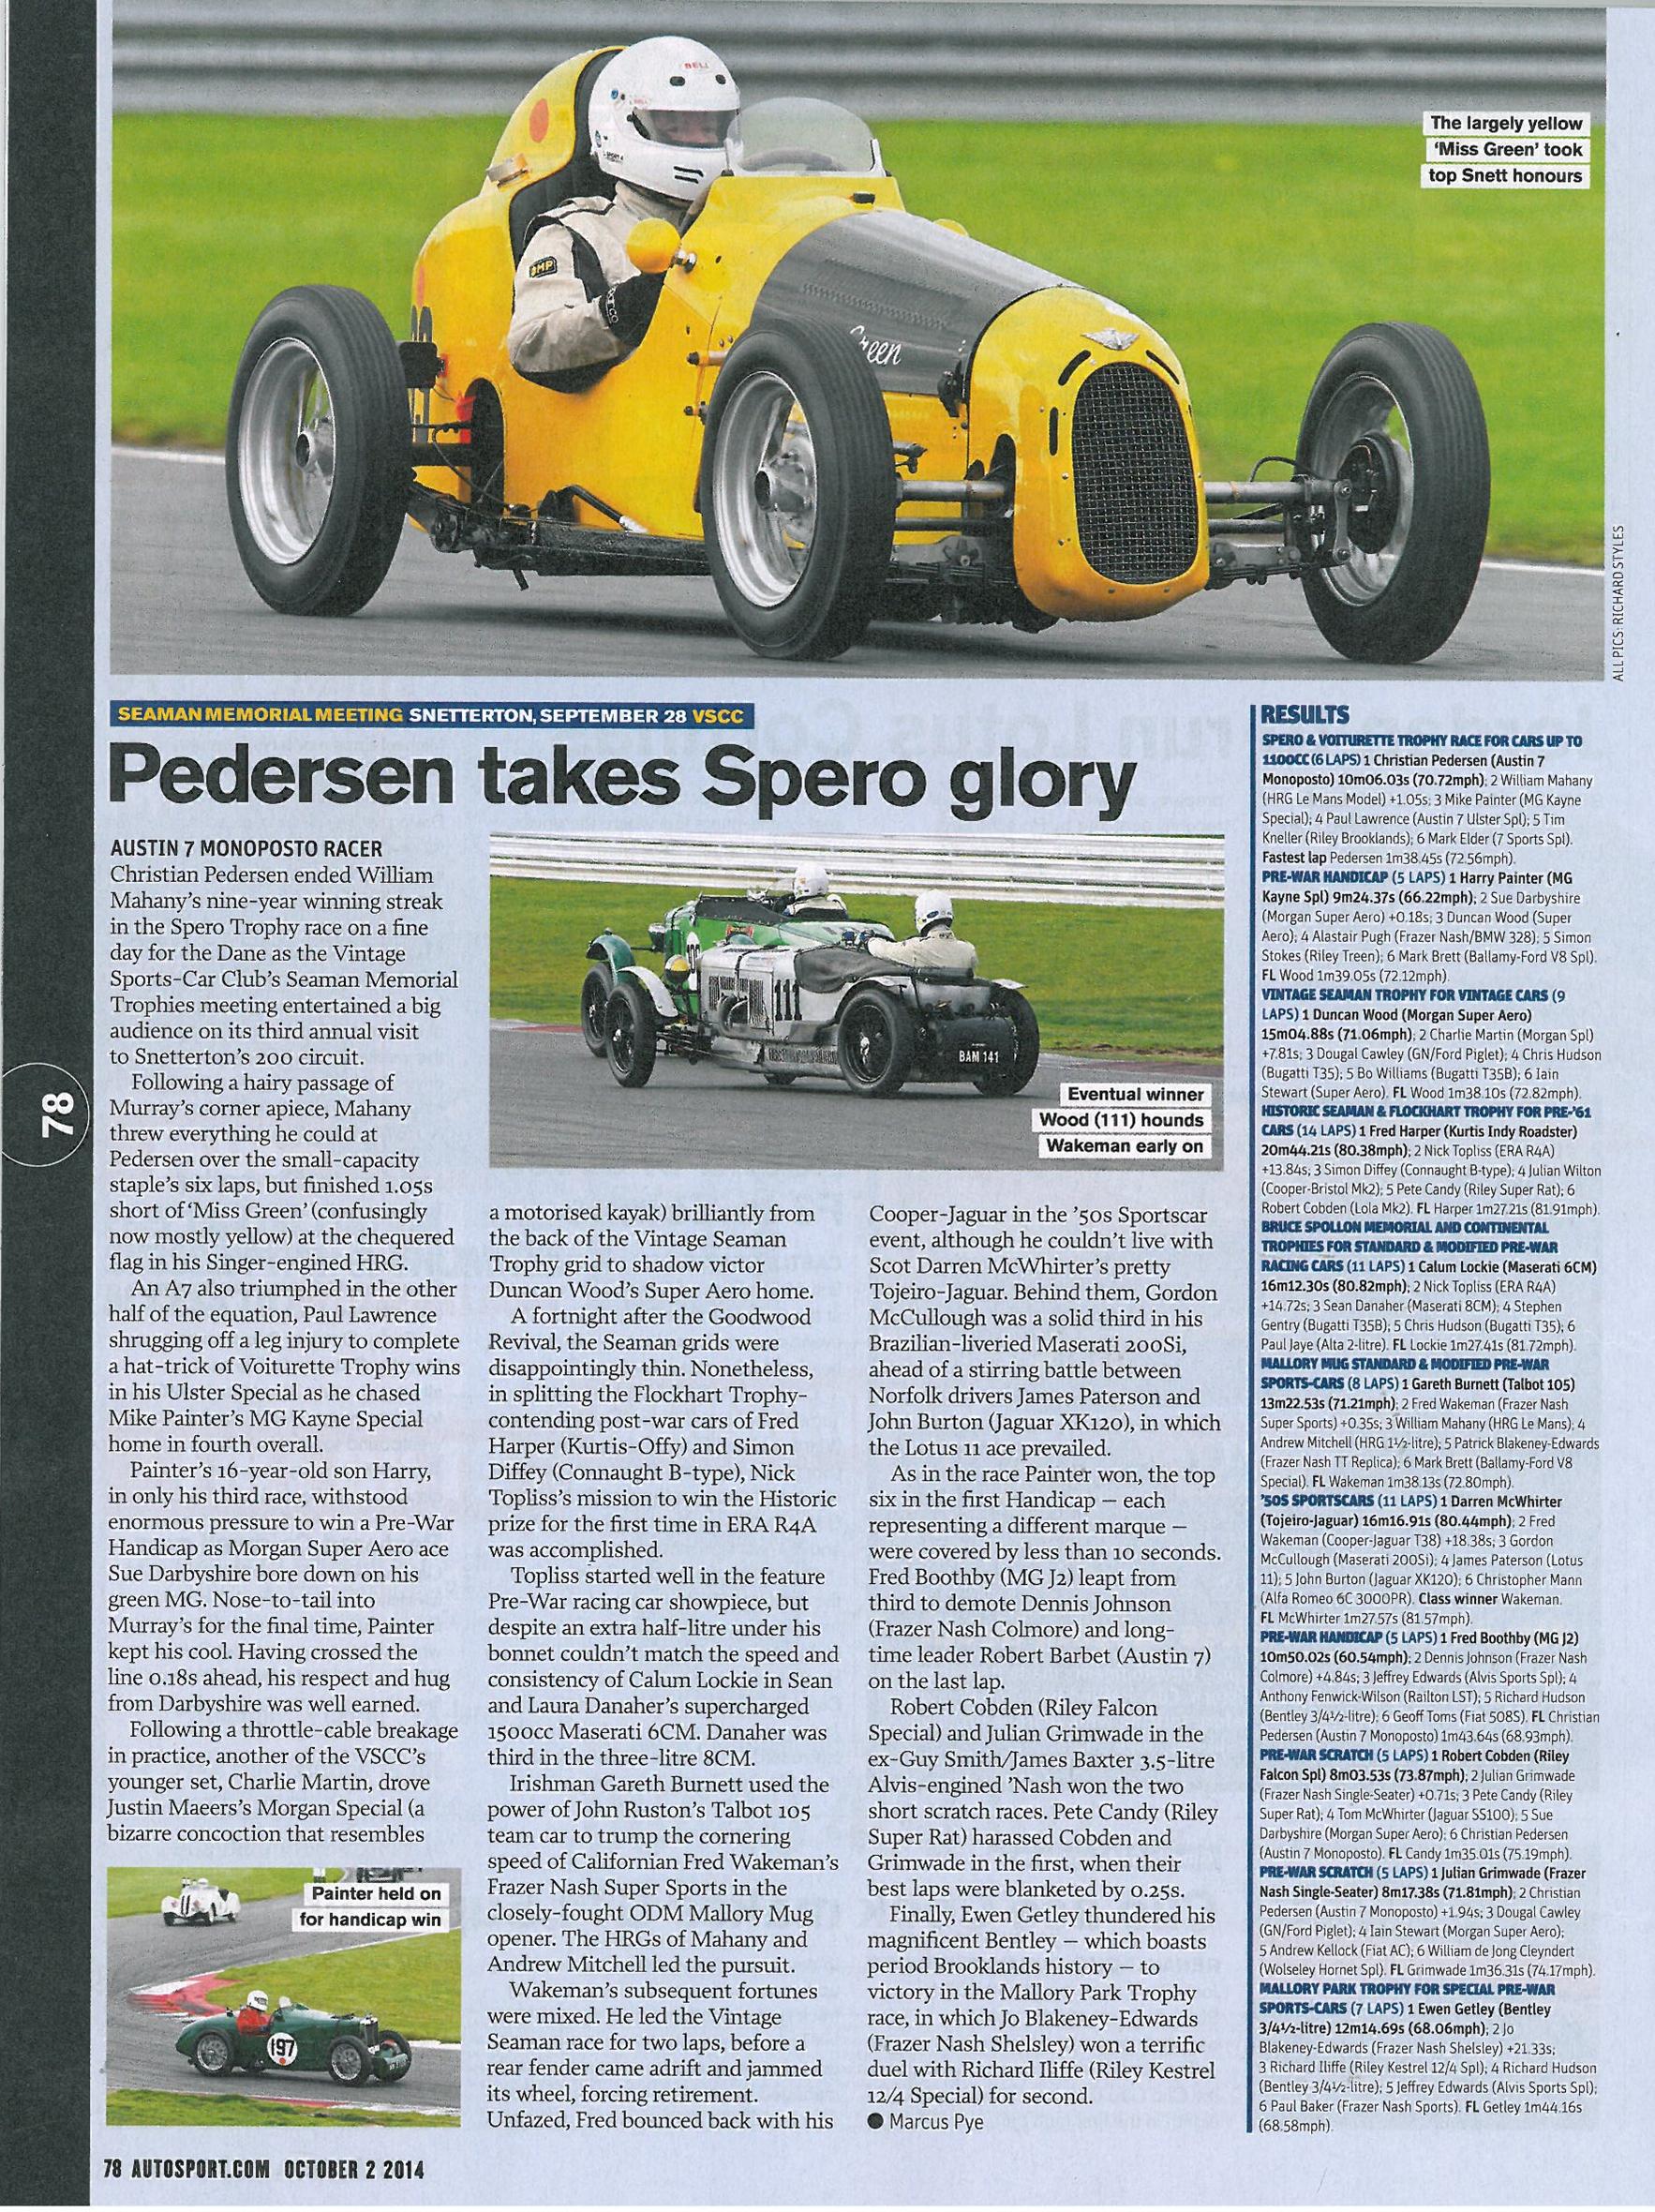 Autosport Magazine features VSCC